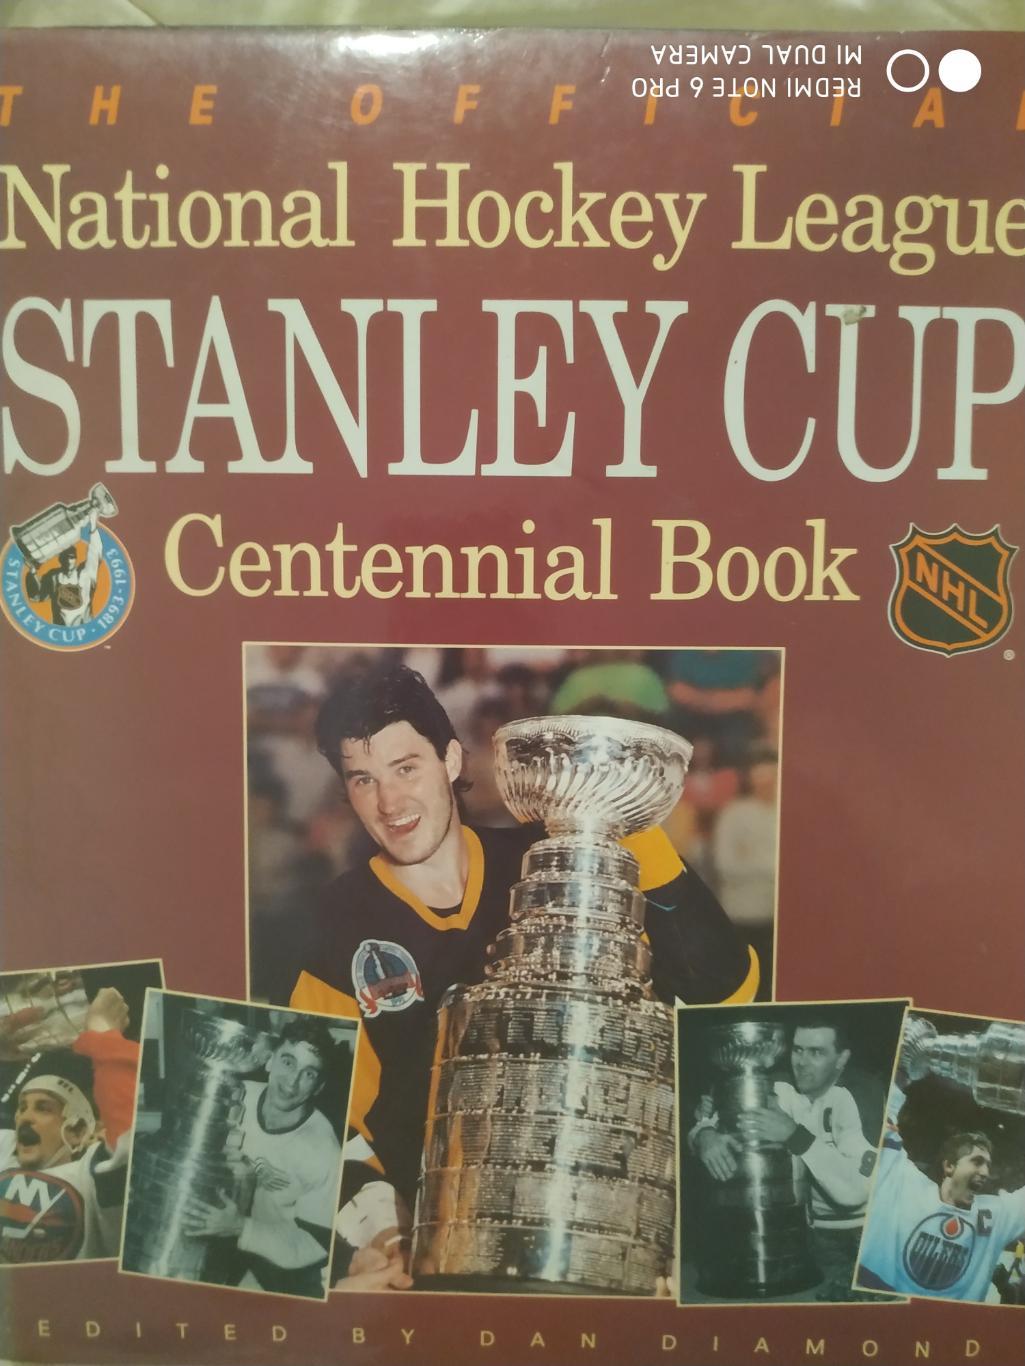 КНИГА АЛЬБОМ НХЛ 1893-1993 NHL STANLEY CUP CENTENNIAL BOOK by DAN DIAMOND